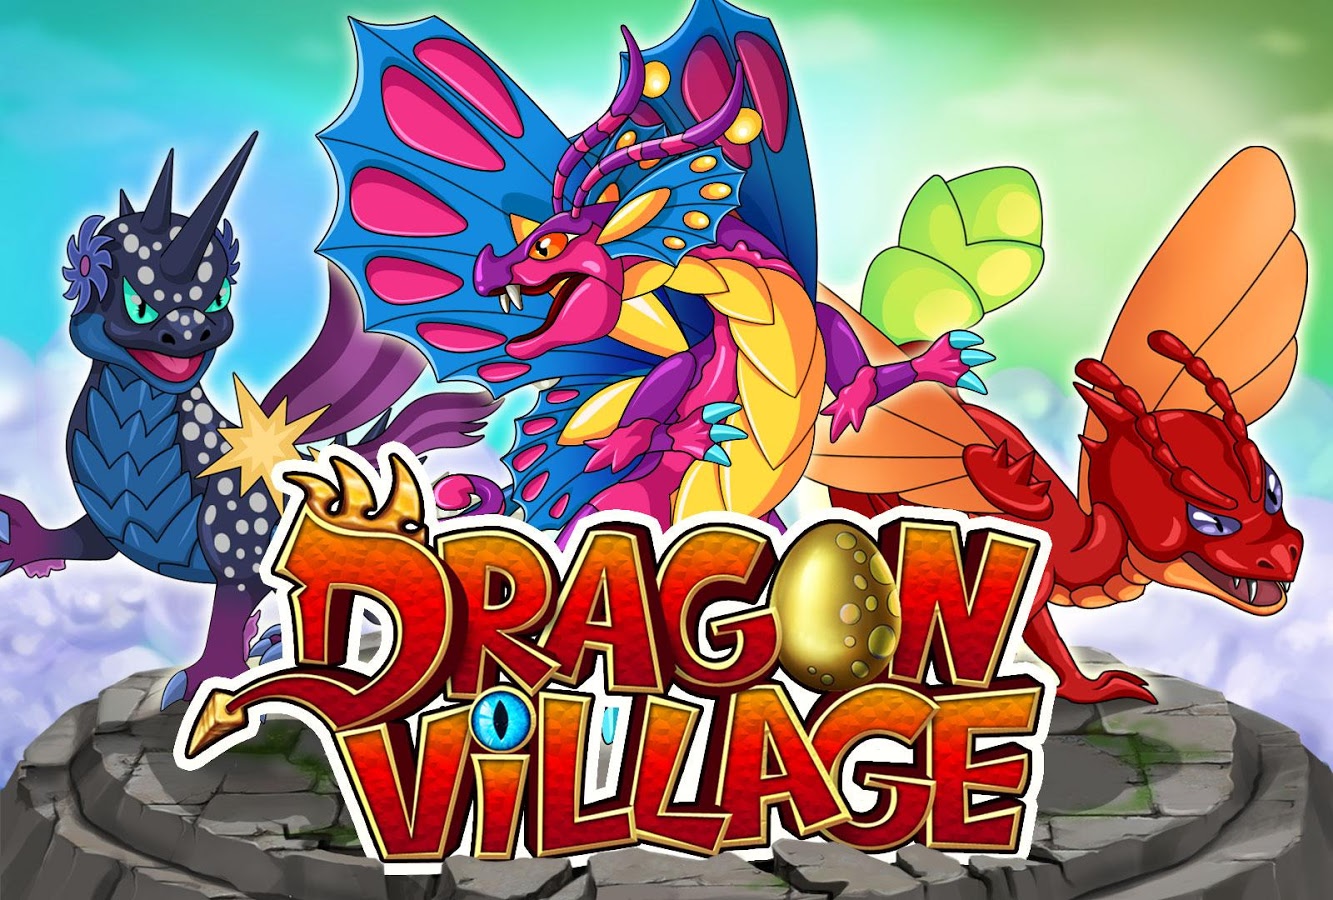 Дракон village. Magic Dragons игра. Игра Мэджик и дракон. Dragon Village. Dragon Village - City SIM Mania из Самба драконы.